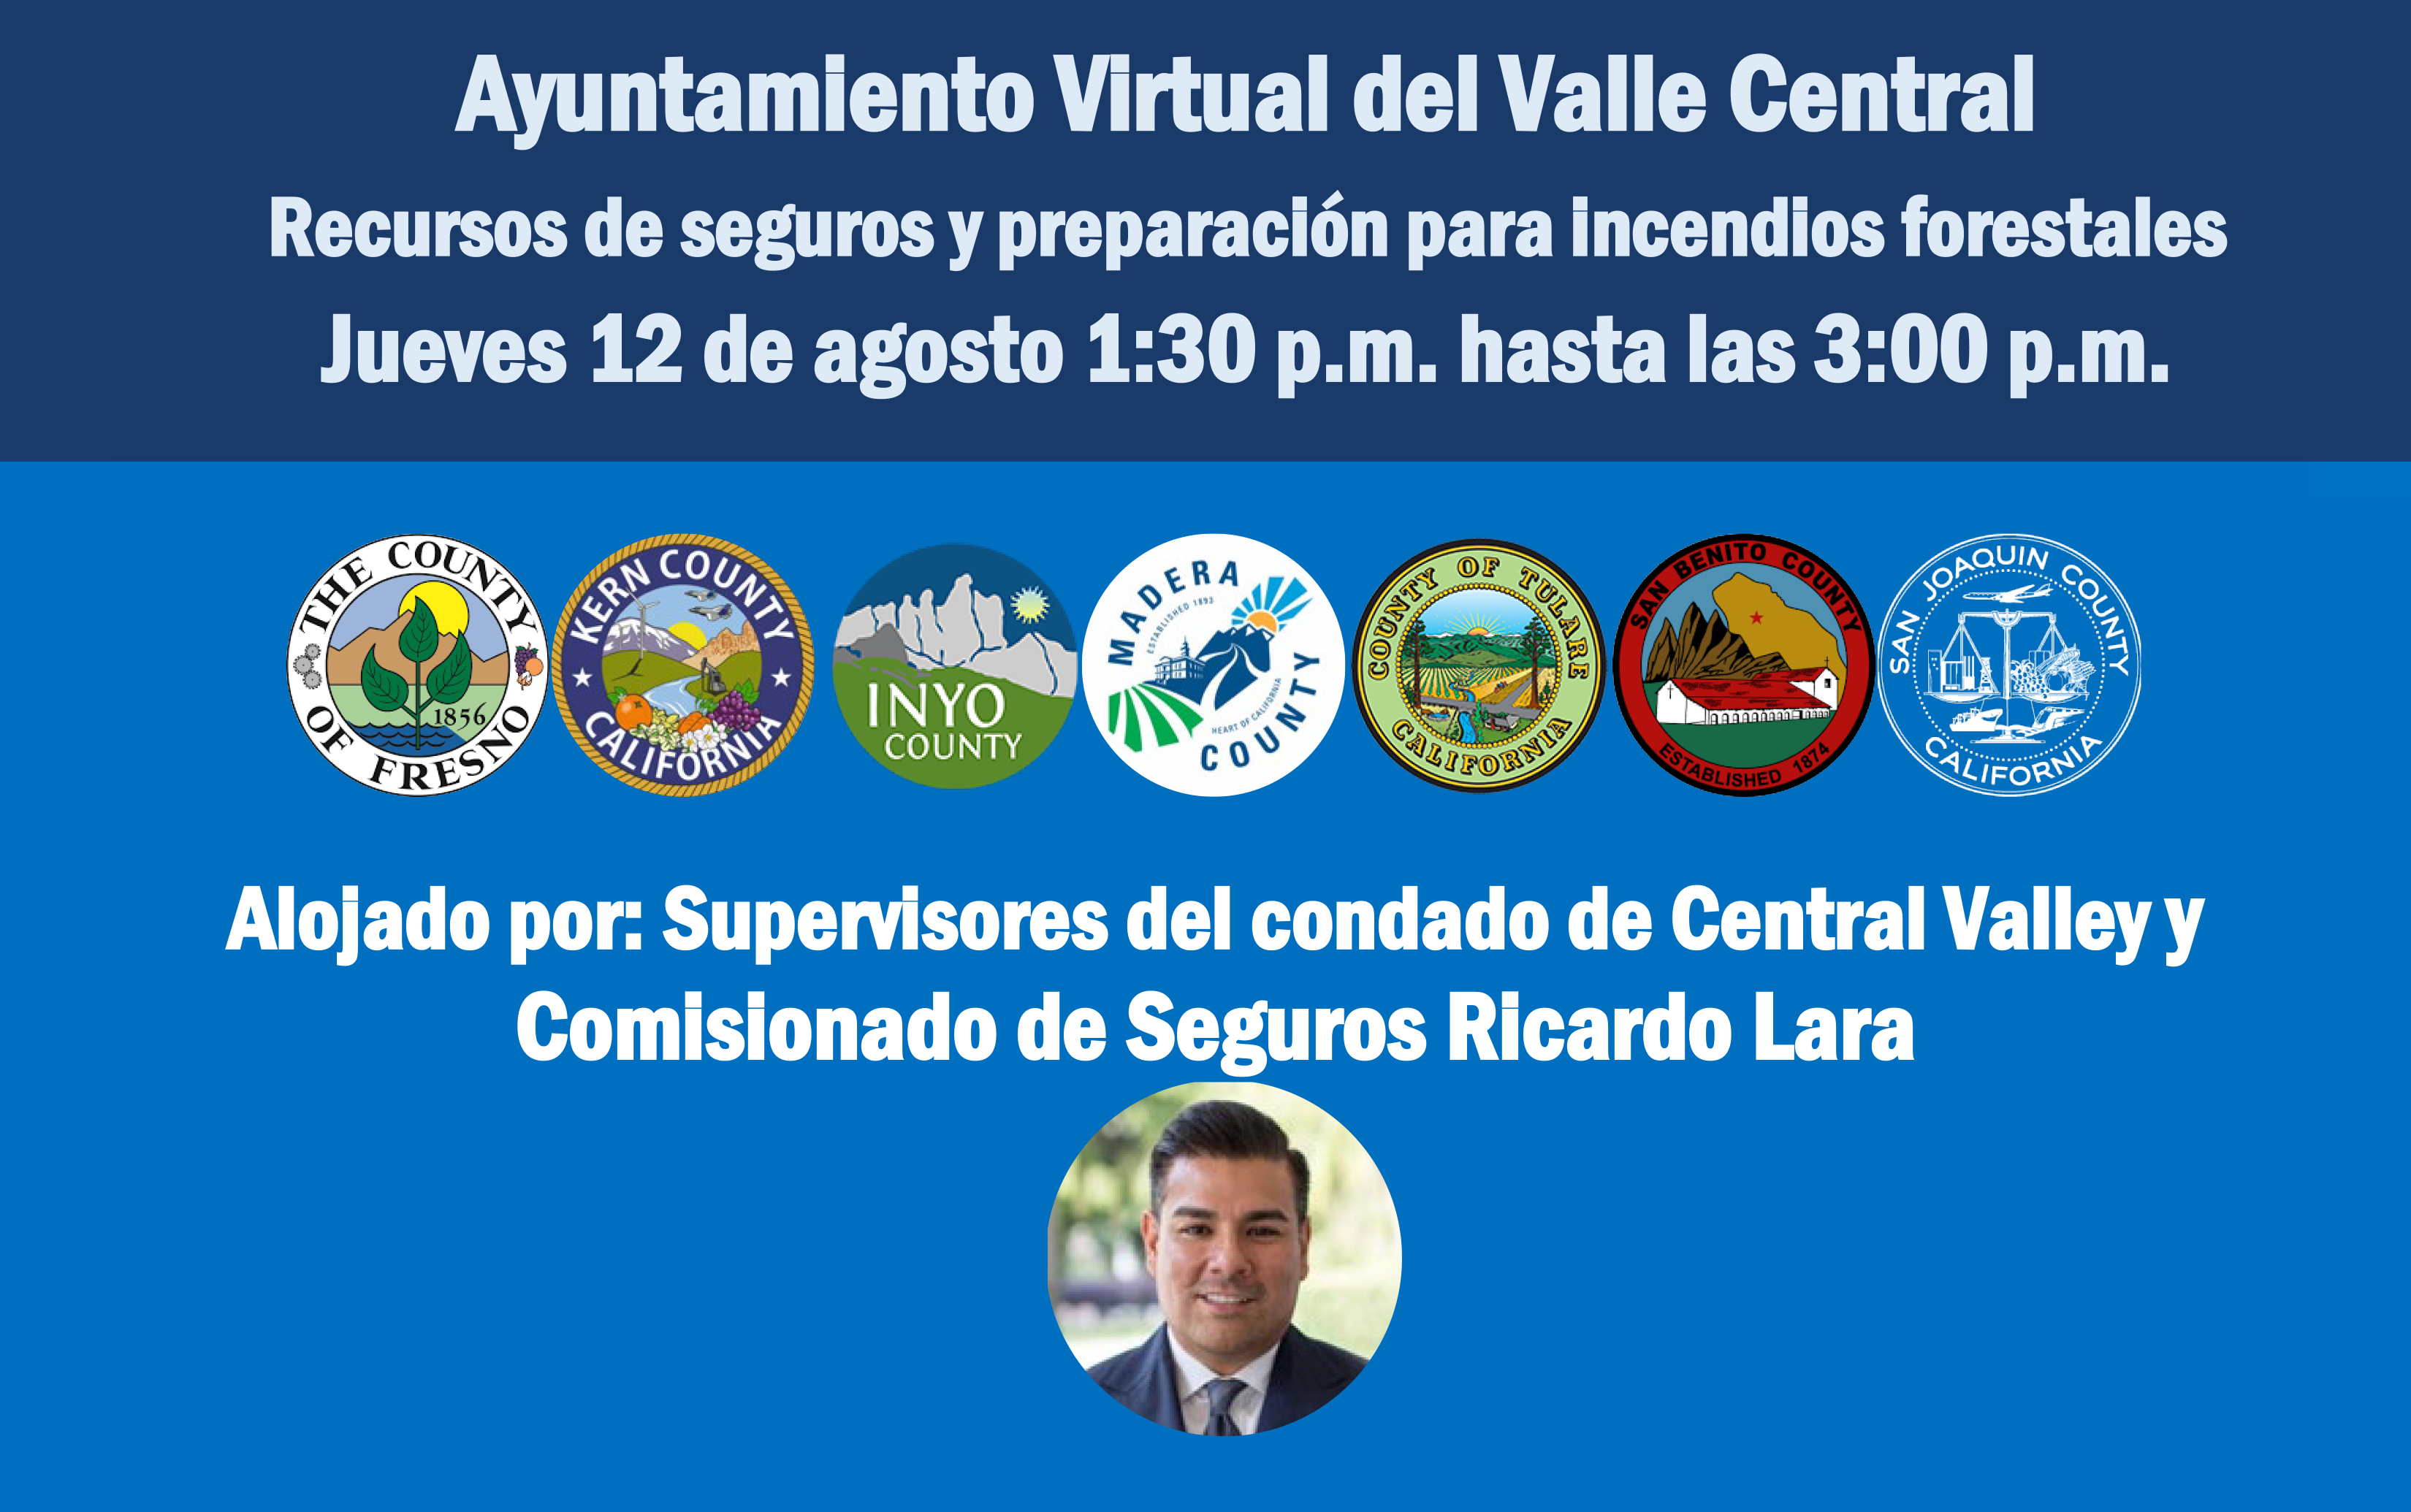 Ayuntamiento Virtual del Valle Central Recursos de seguros y preparación para incendios forestales Jueves 12 de agosto 1:30 p.m. hasta las 3:00 p.m. 1:30 DE LA TARDE. hasta las 3:00 p.m. 